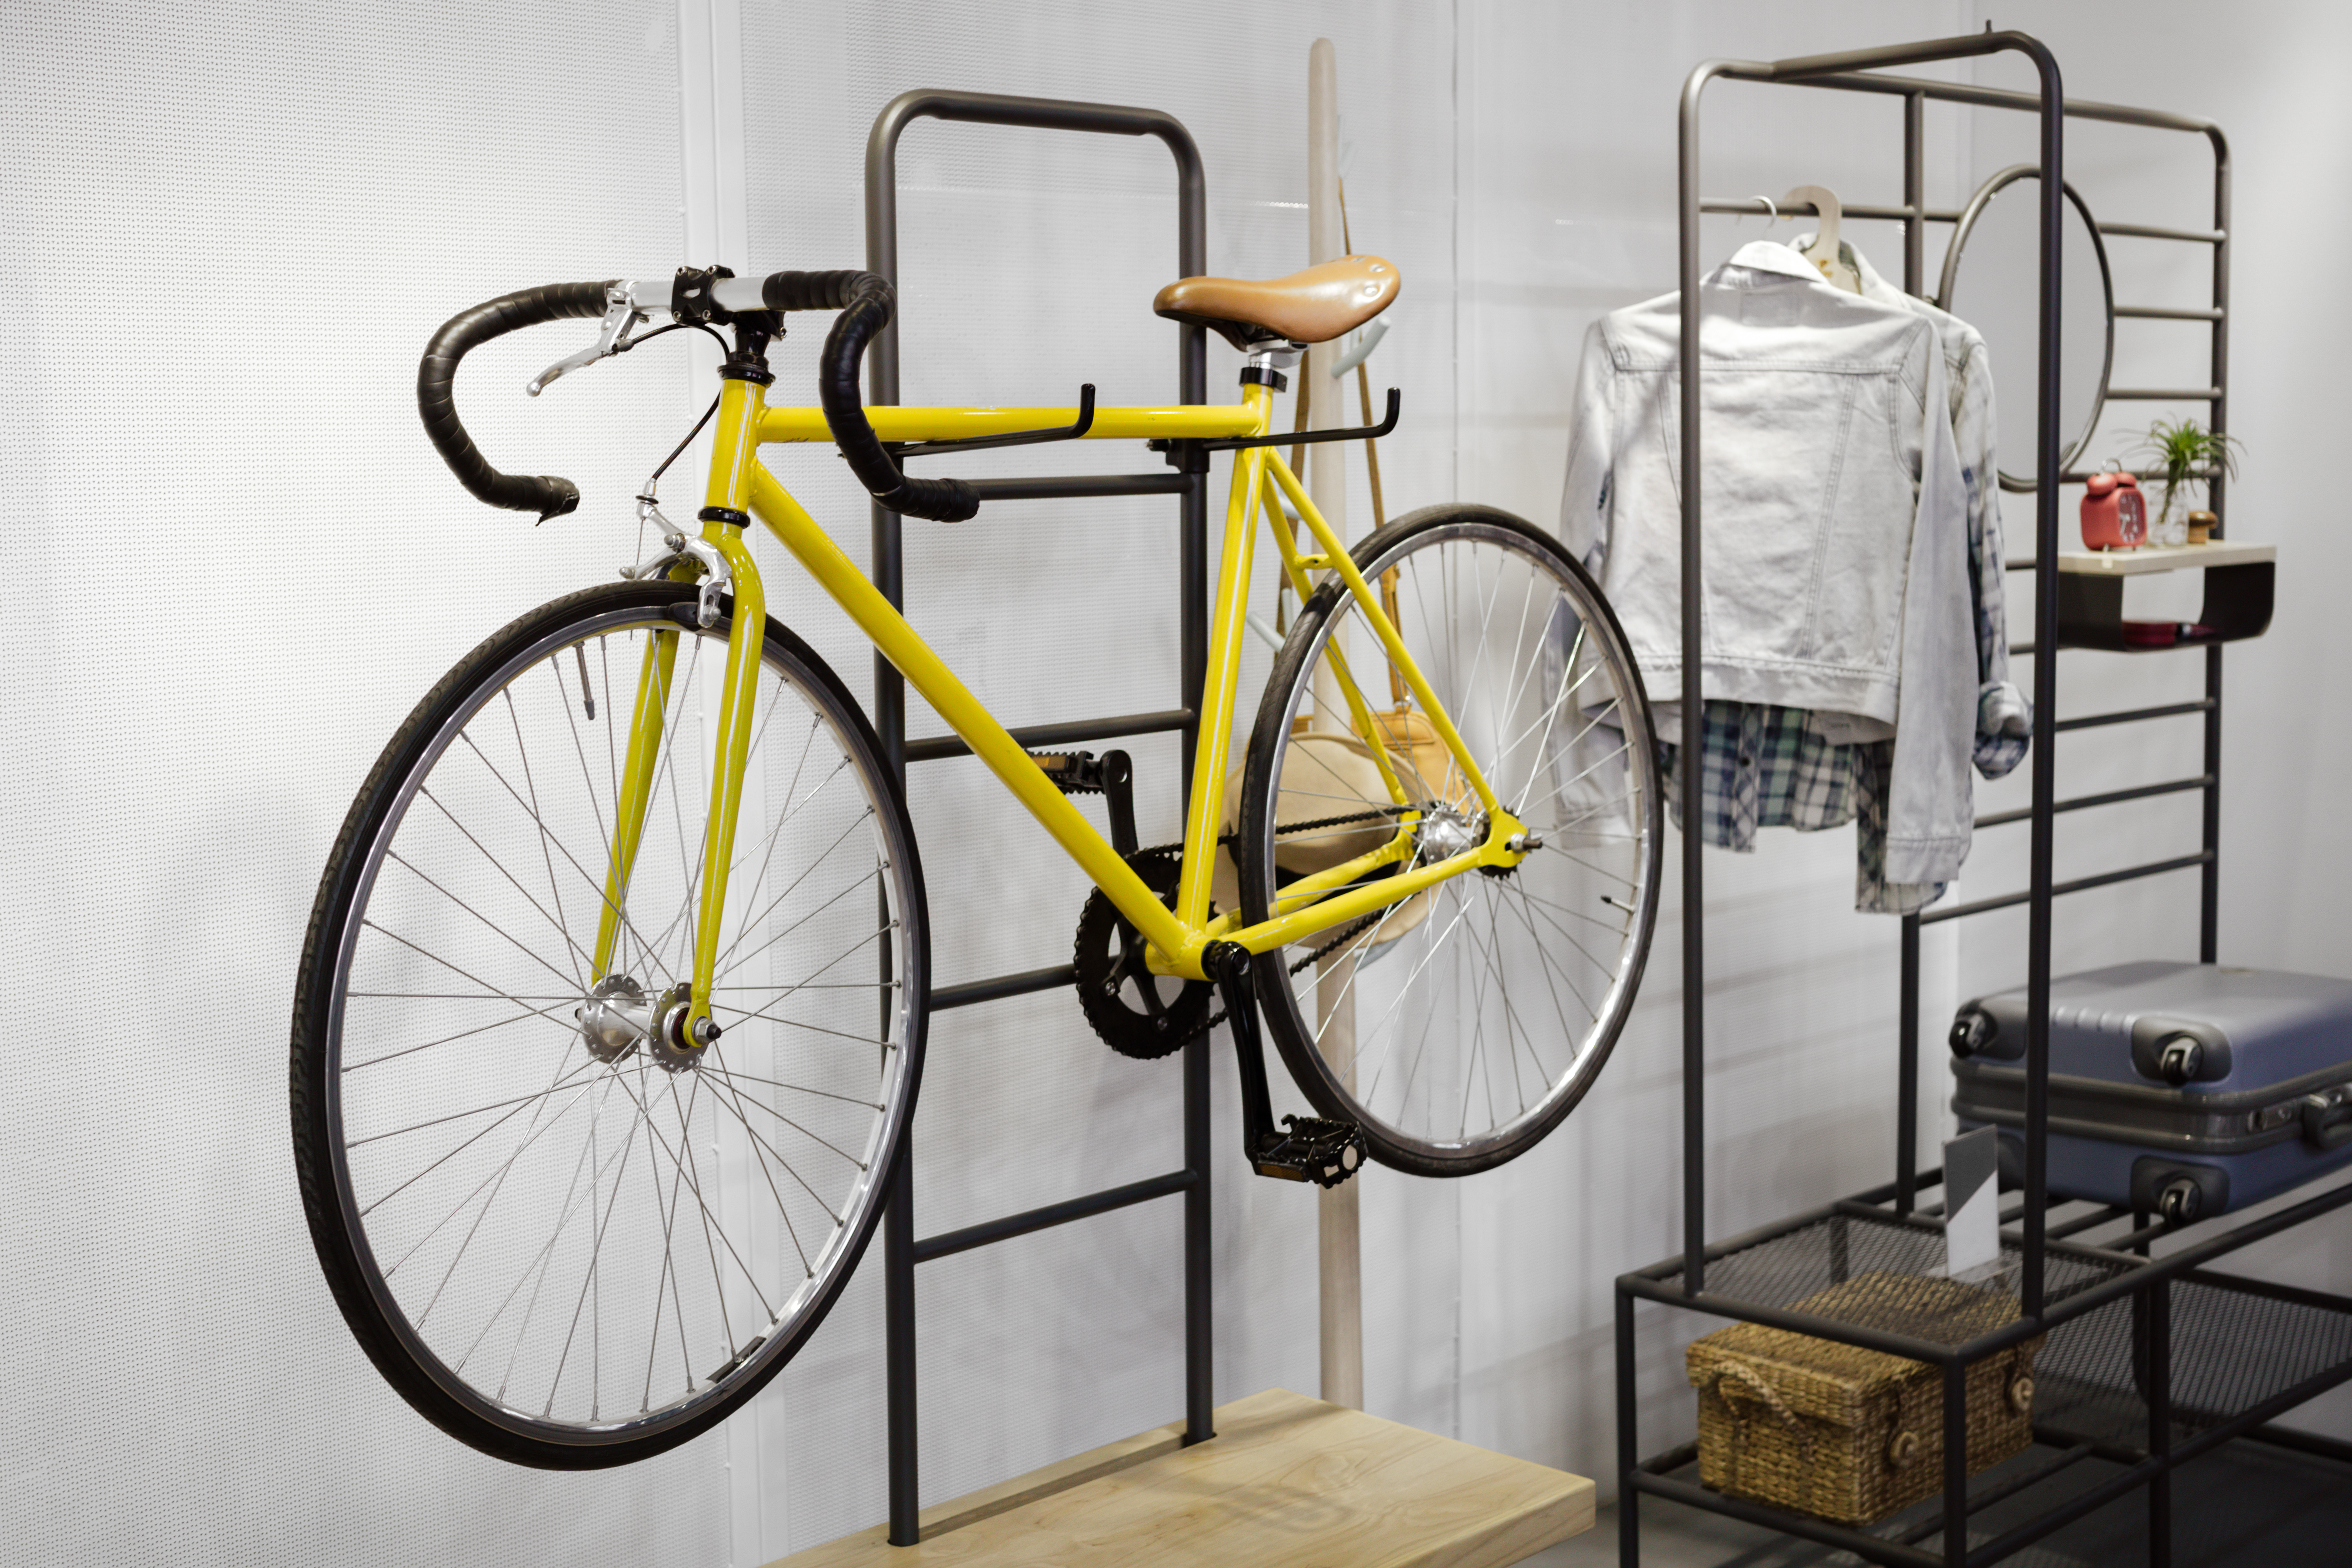 15 Best Garage Bike Storage Ideas To, Overhead Garage Storage Bike Hooks